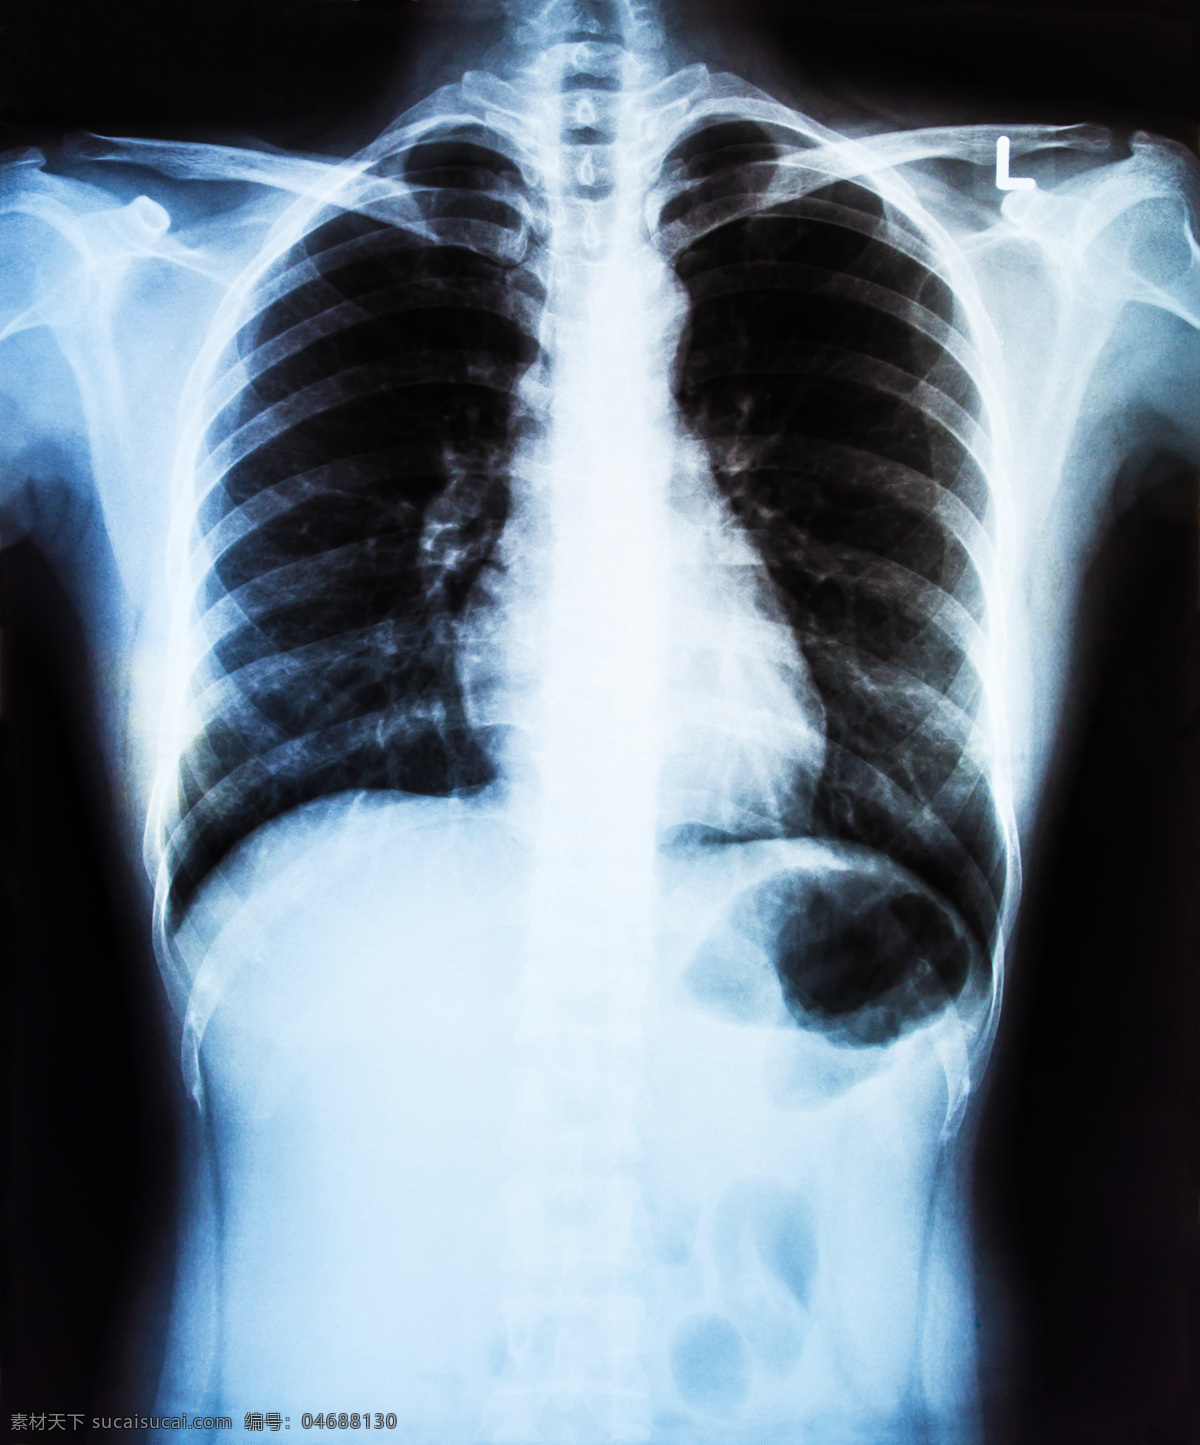 x射线 肺部扫描 底片 x光底片 x射线扫描 医院 医疗 医学 病人 医疗护理 现代科技